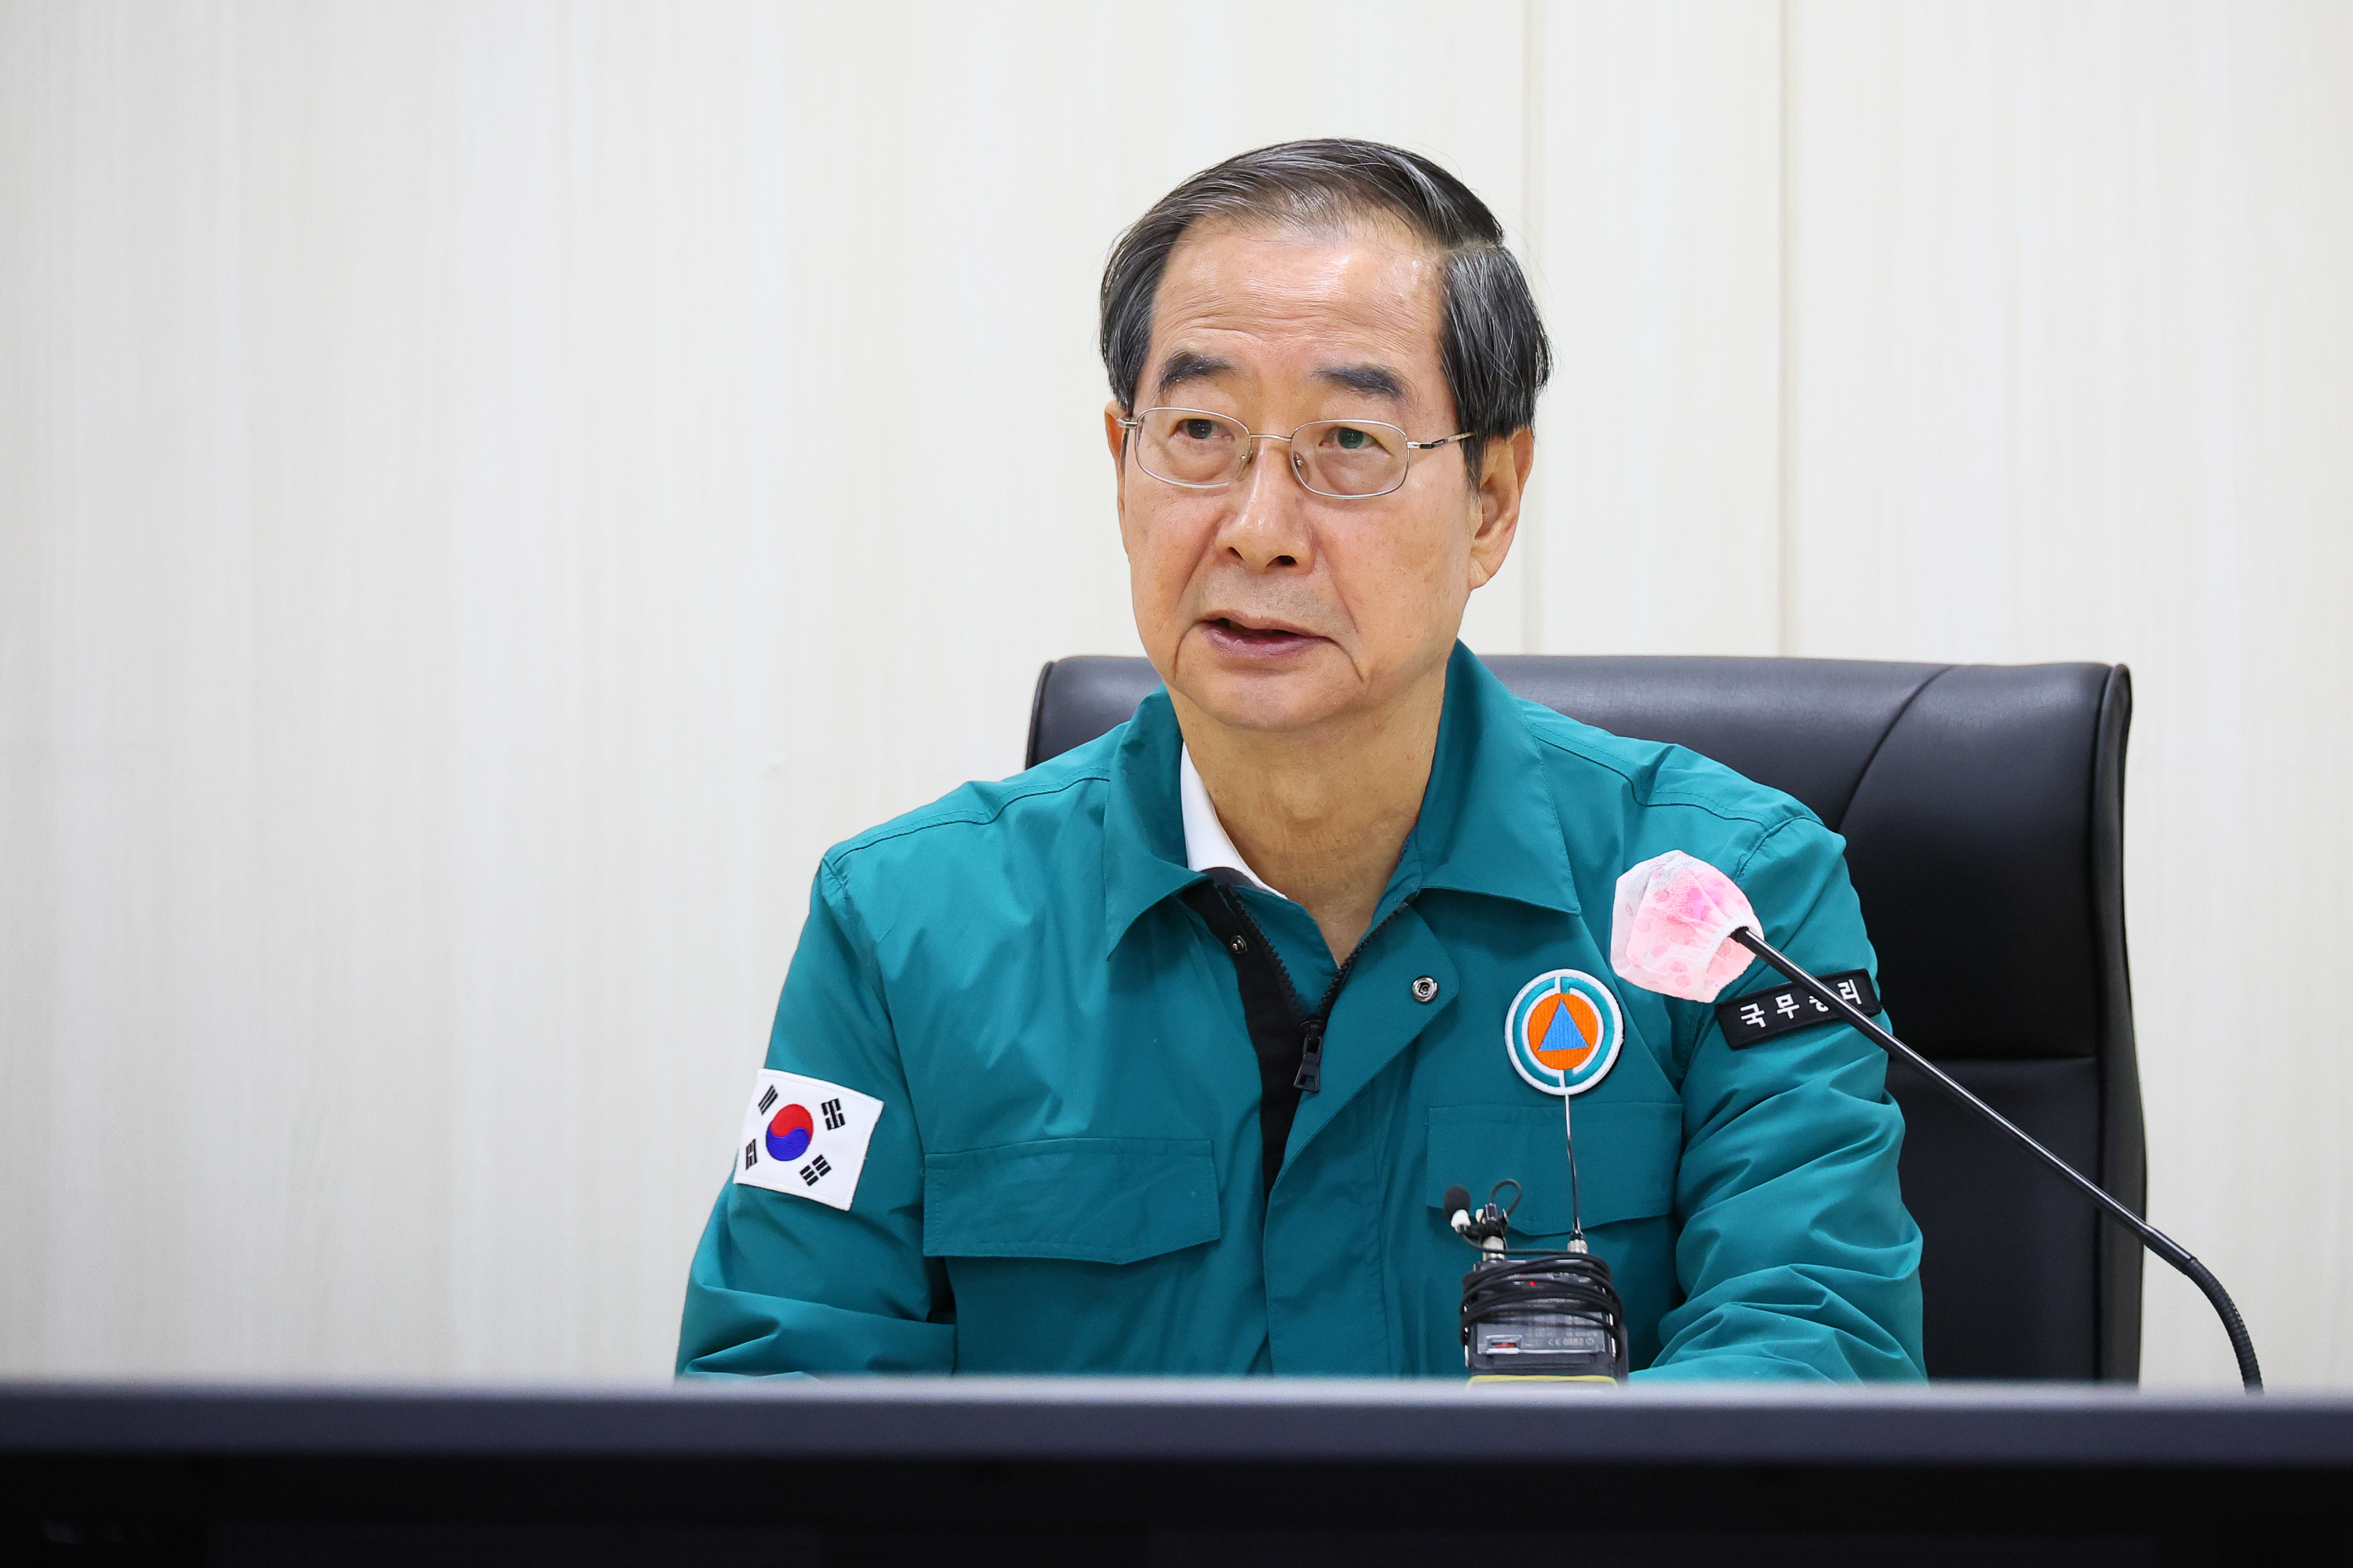 한덕수 총리, 전산망 복구 중인 국가정보자원관리원 방문